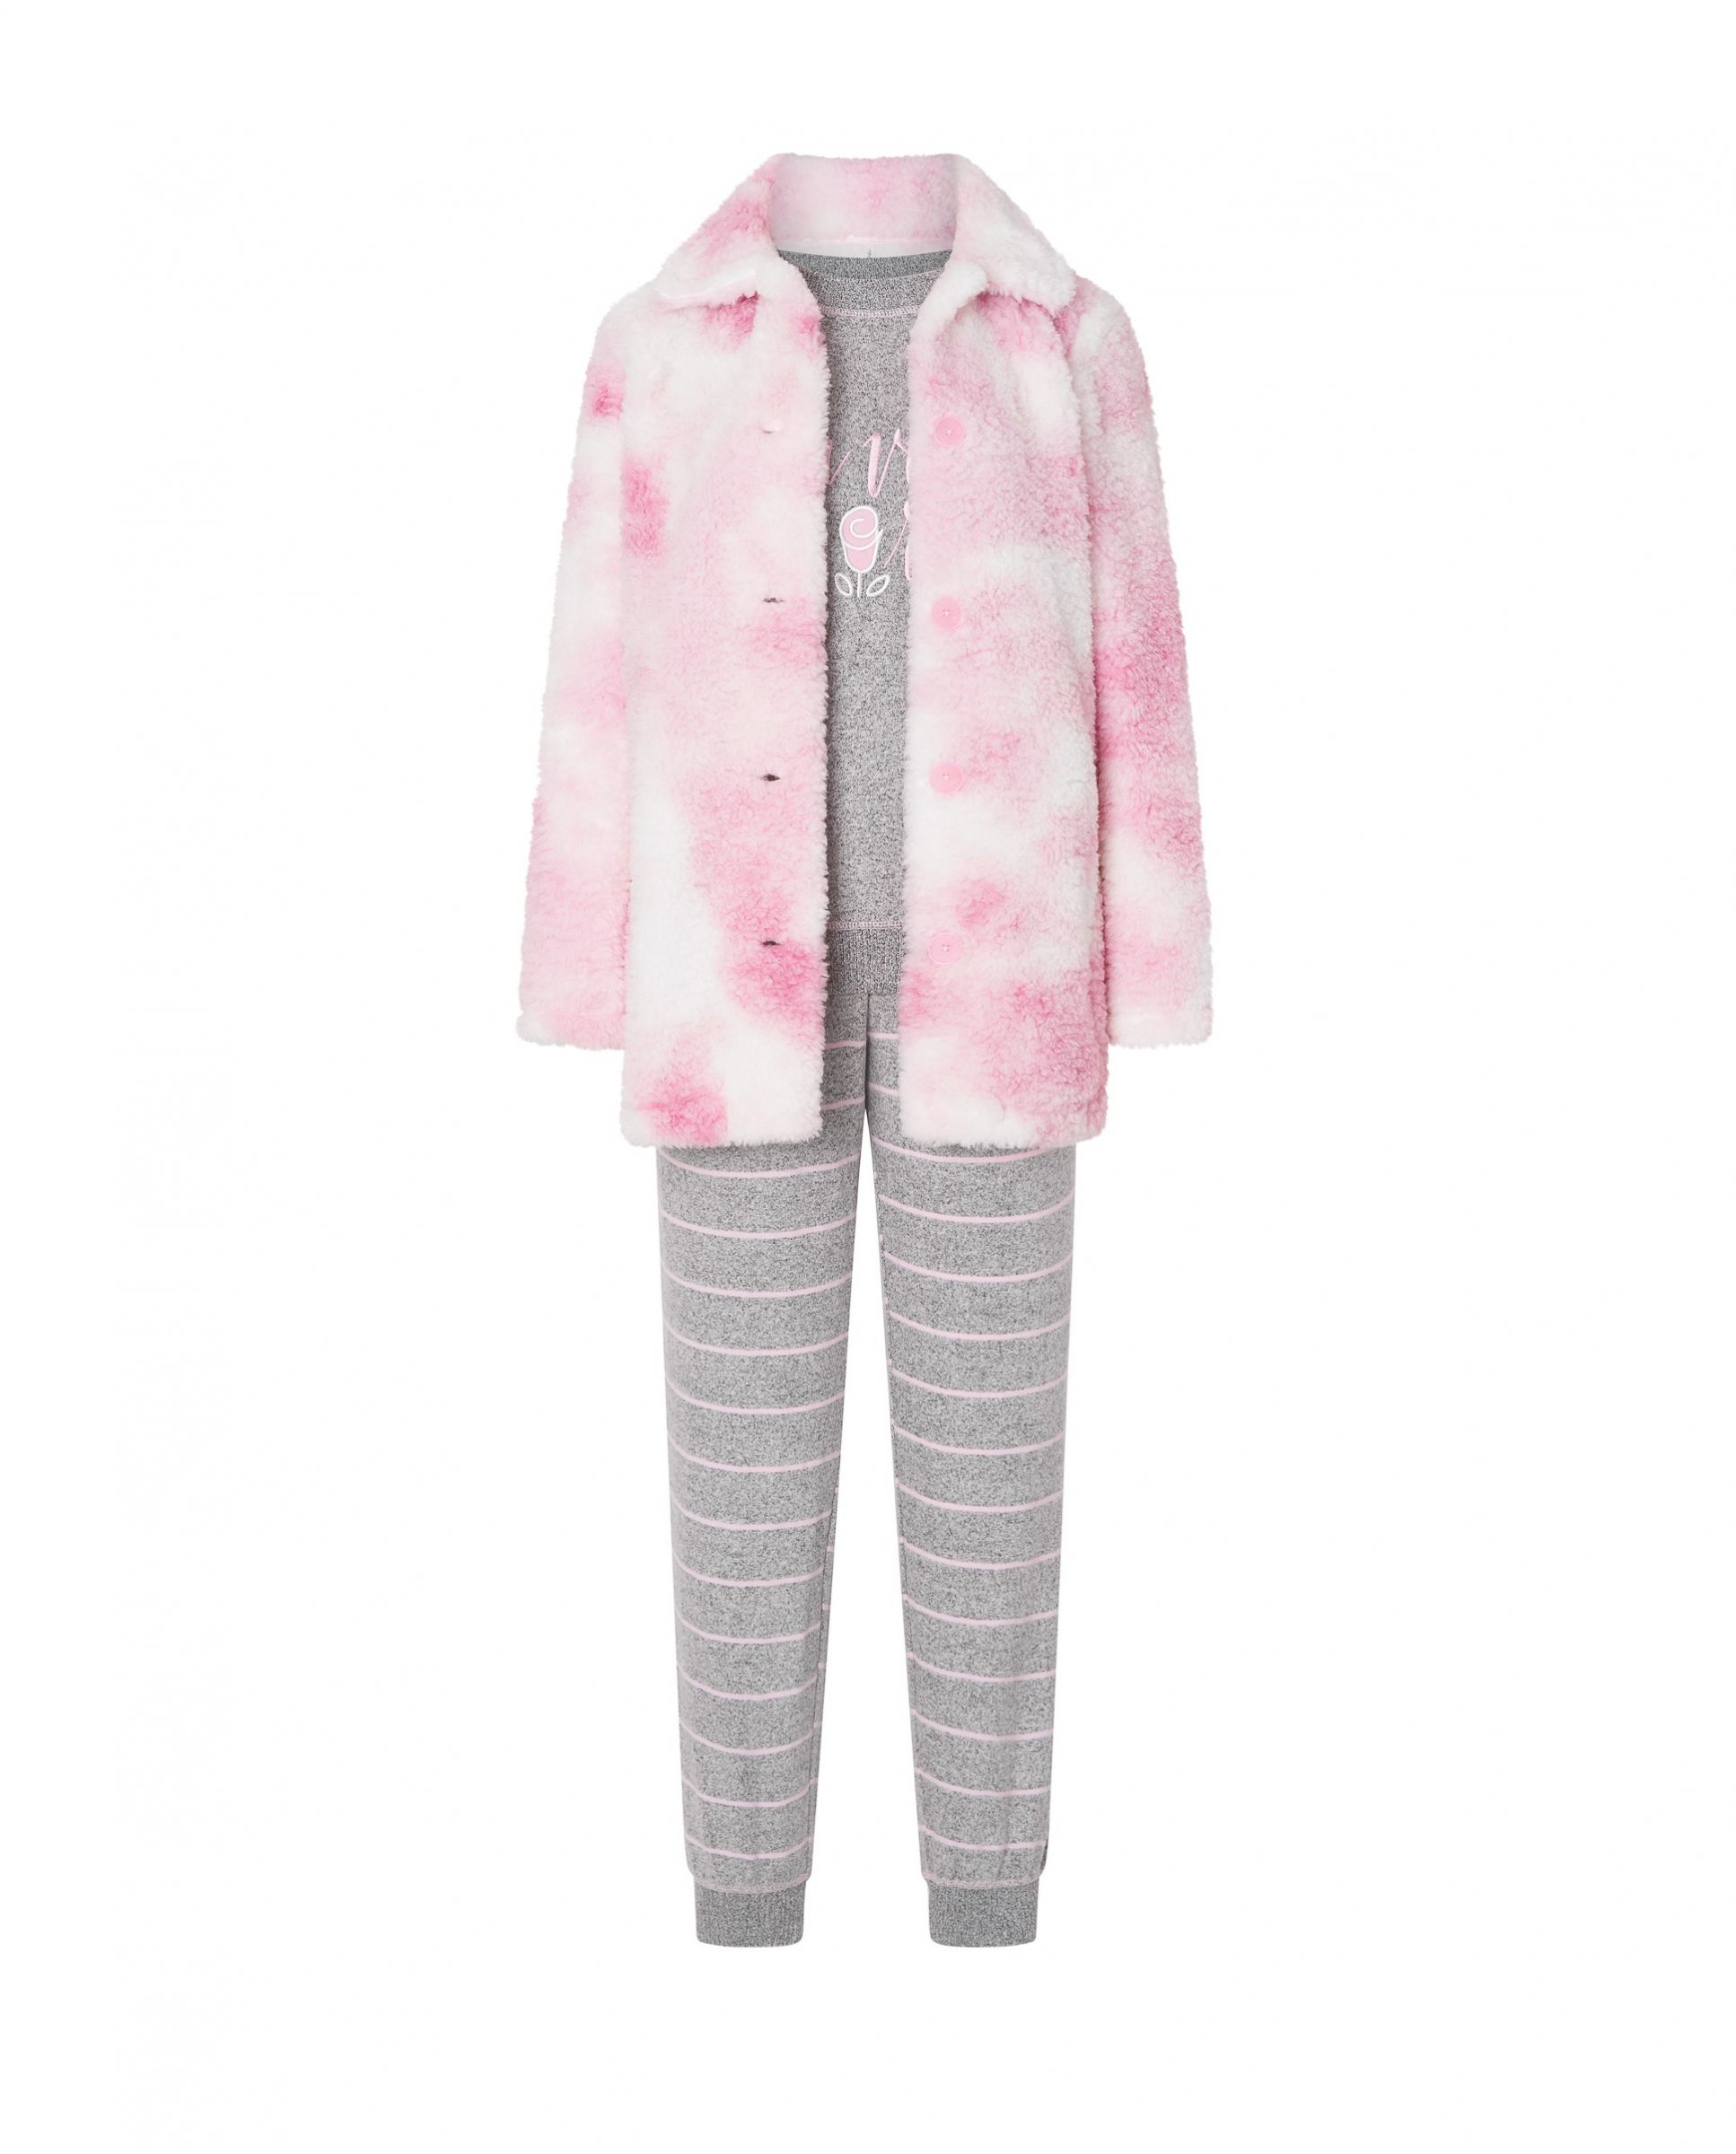 Bata corta de borreguillo rosa y pijama chaqueta abierta botones, pantalón largo rayas con bolsillos y puños.